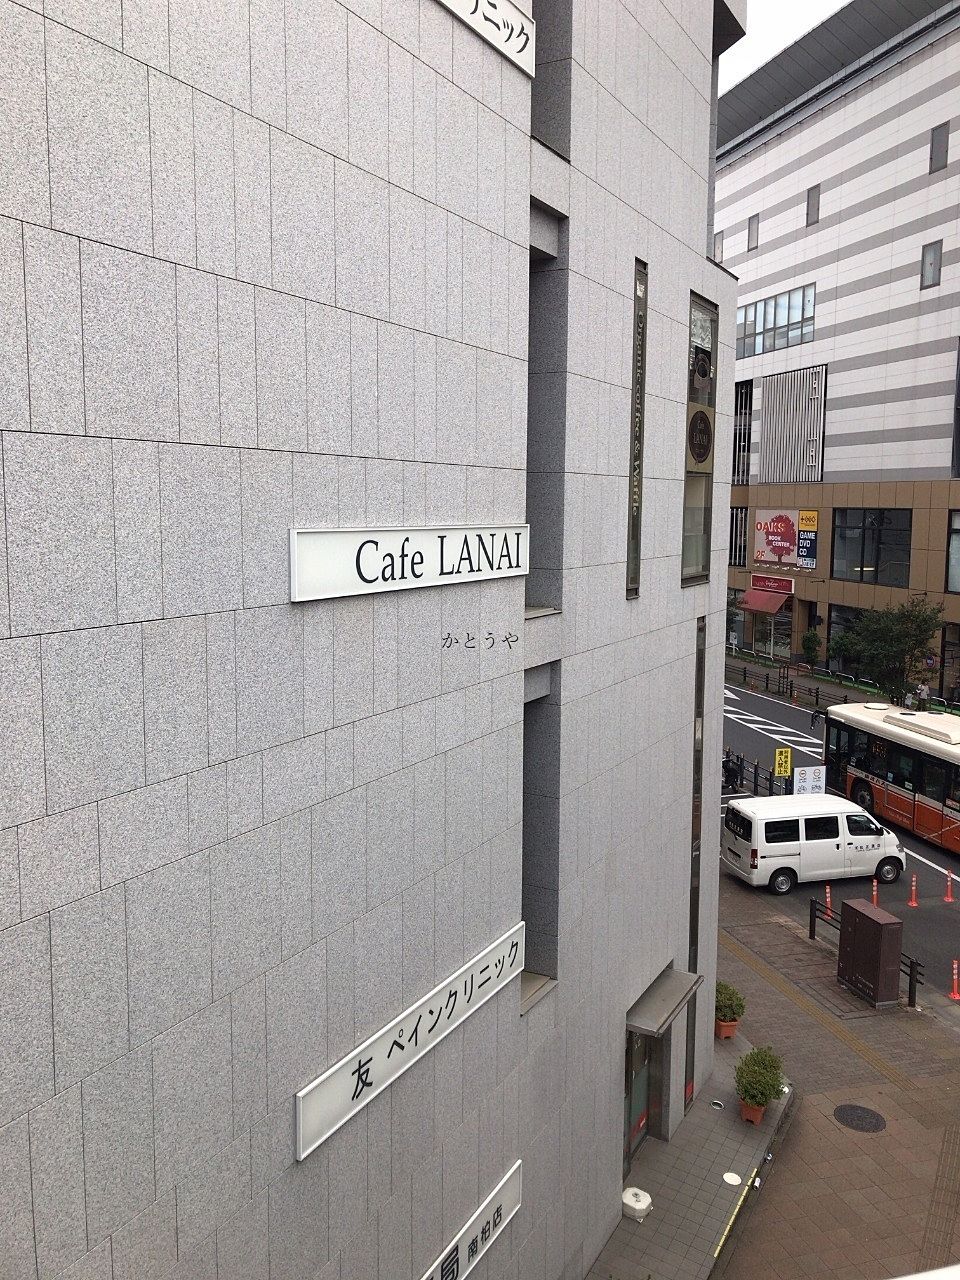 カフェ・ラナイさんは駅近くビルの3階のお店です